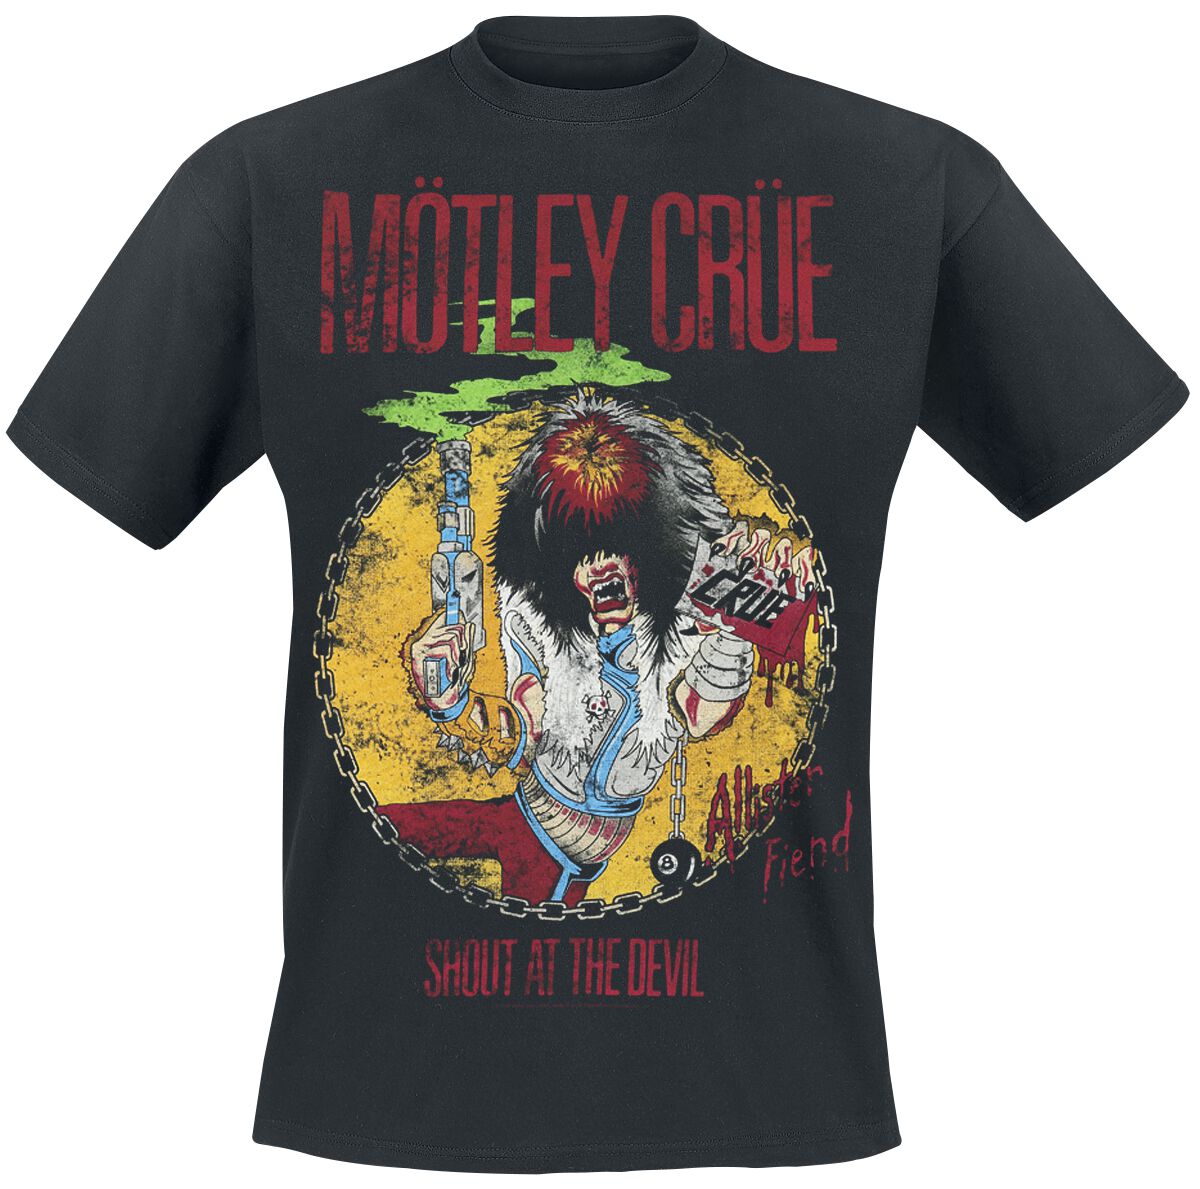 Mötley Crüe T-Shirt - Shout At The Devil - S bis XXL - für Männer - Größe XL - schwarz  - Lizenziertes Merchandise!